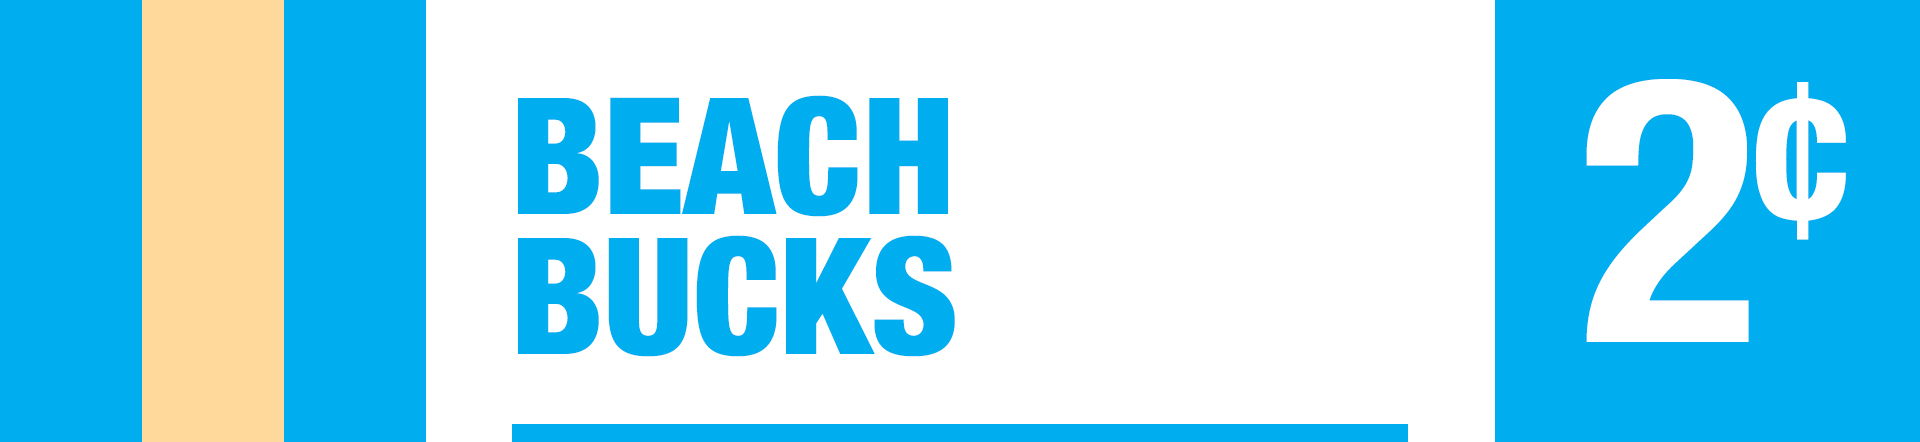 Beach Bucks